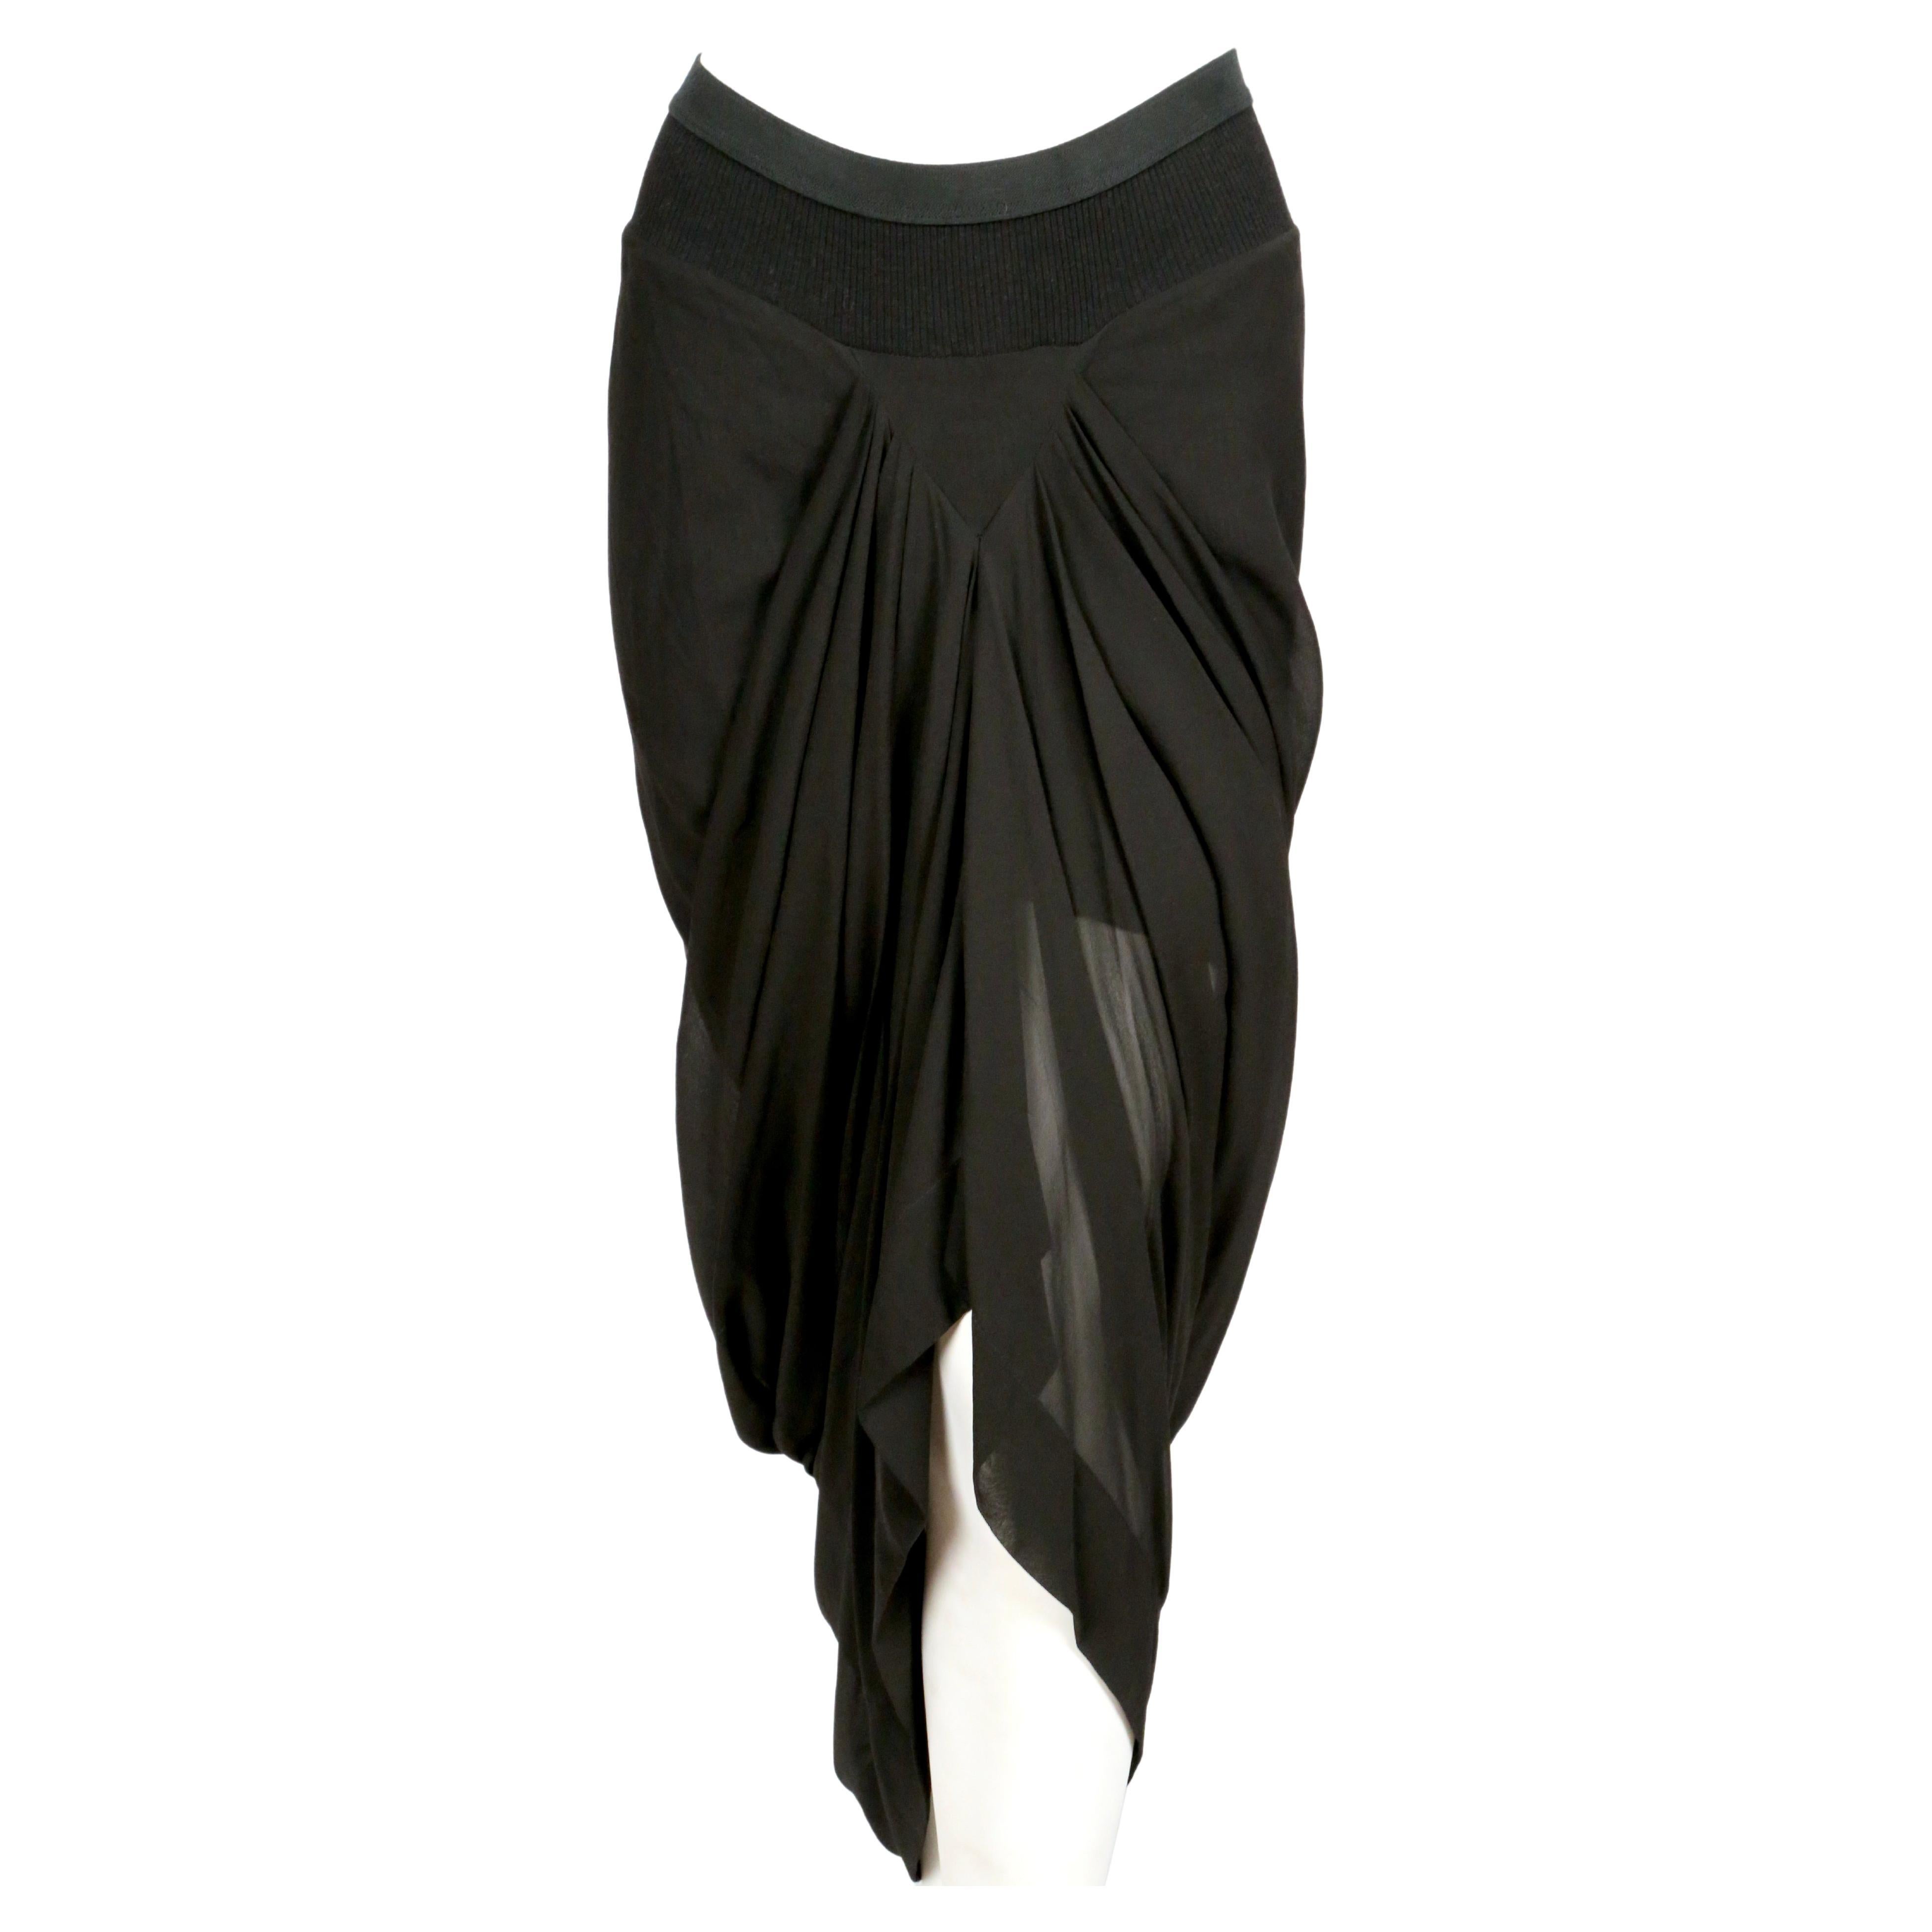 Jupe en soie drapée noire de jais, conçue par Rick Owens, telle qu'elle apparaît sur le défilé de la collection 2007 